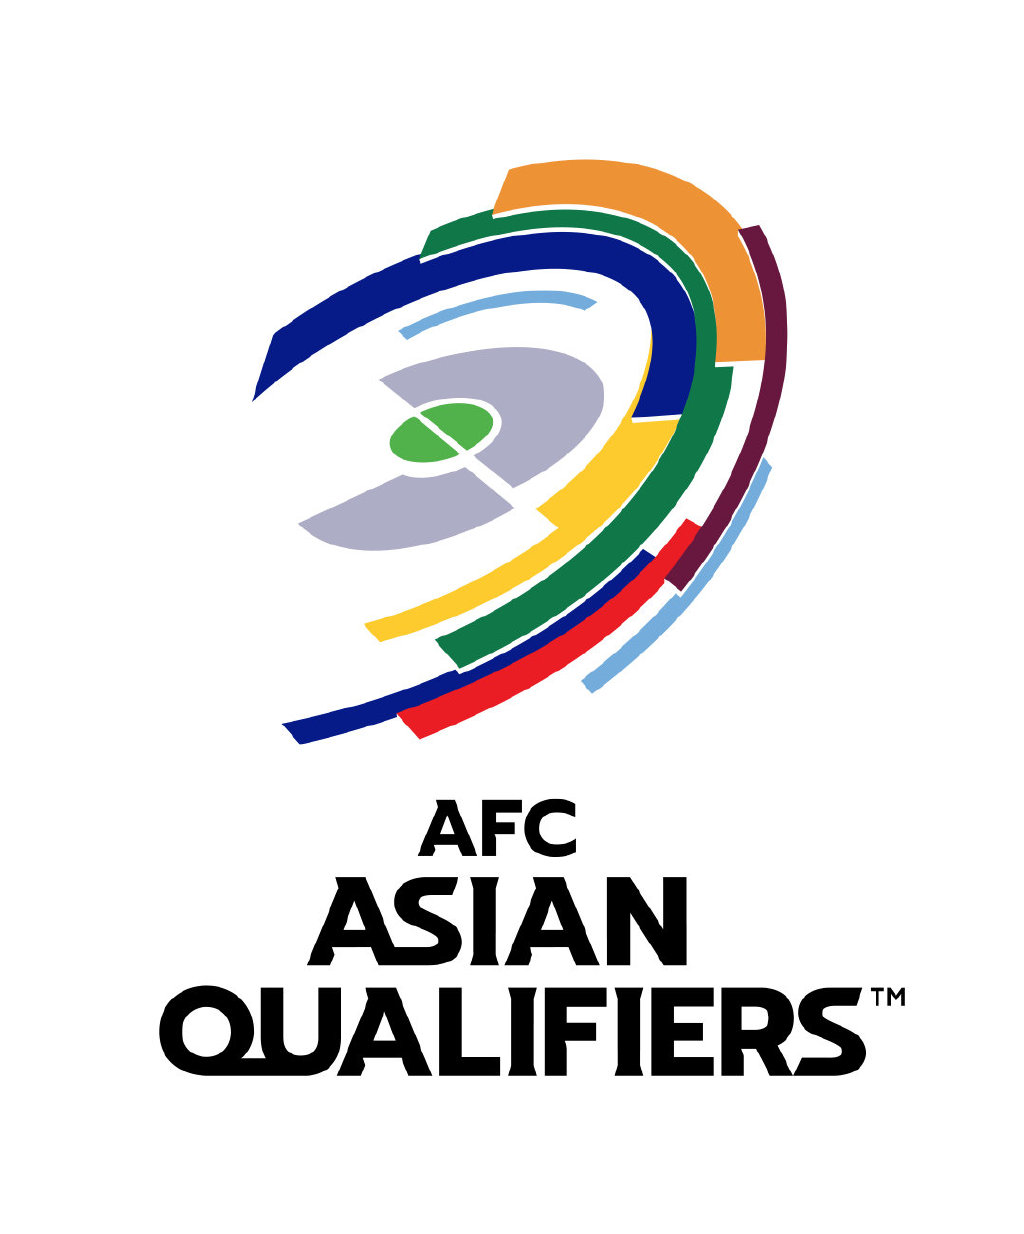 亚足联官方:前40名的A组剩余比赛在阿拉伯联合酋长国的沙迦举行